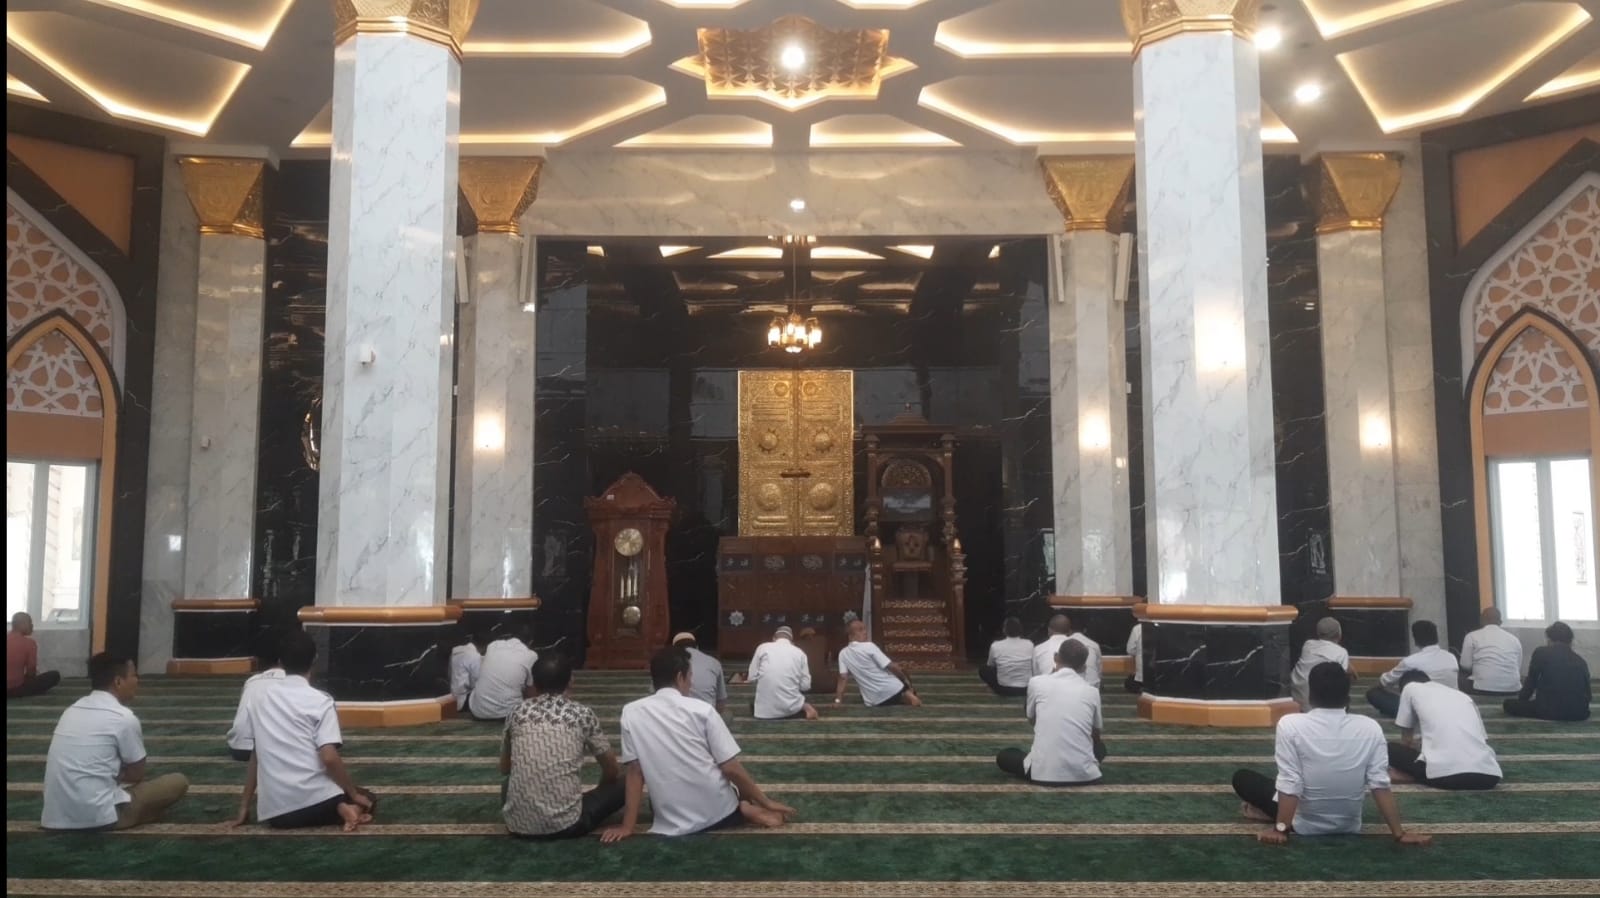 Menyambut Ramadan 1445 Hijriah, Masjid Agung An-Nur Ogan Ilir Siap Dengan Nuansa Baru